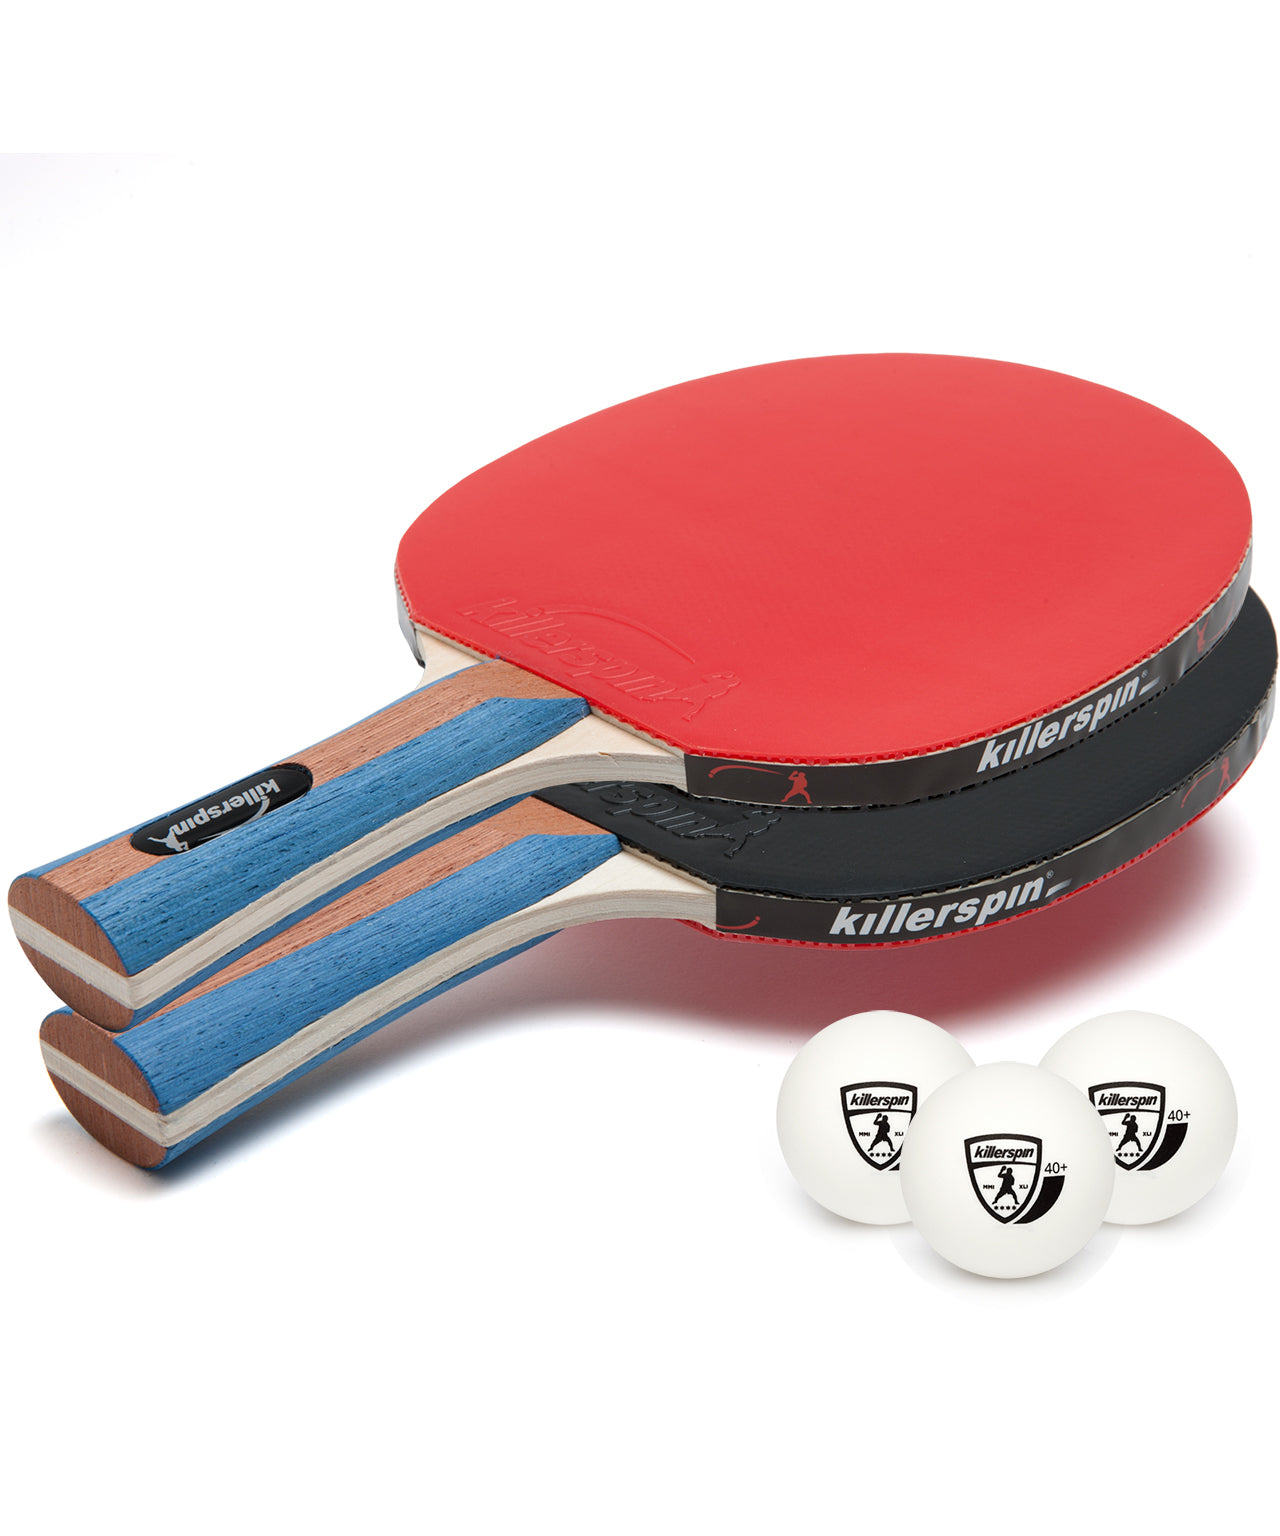 Killerspin Ping Pong Paddle Set JetSet2 Premium